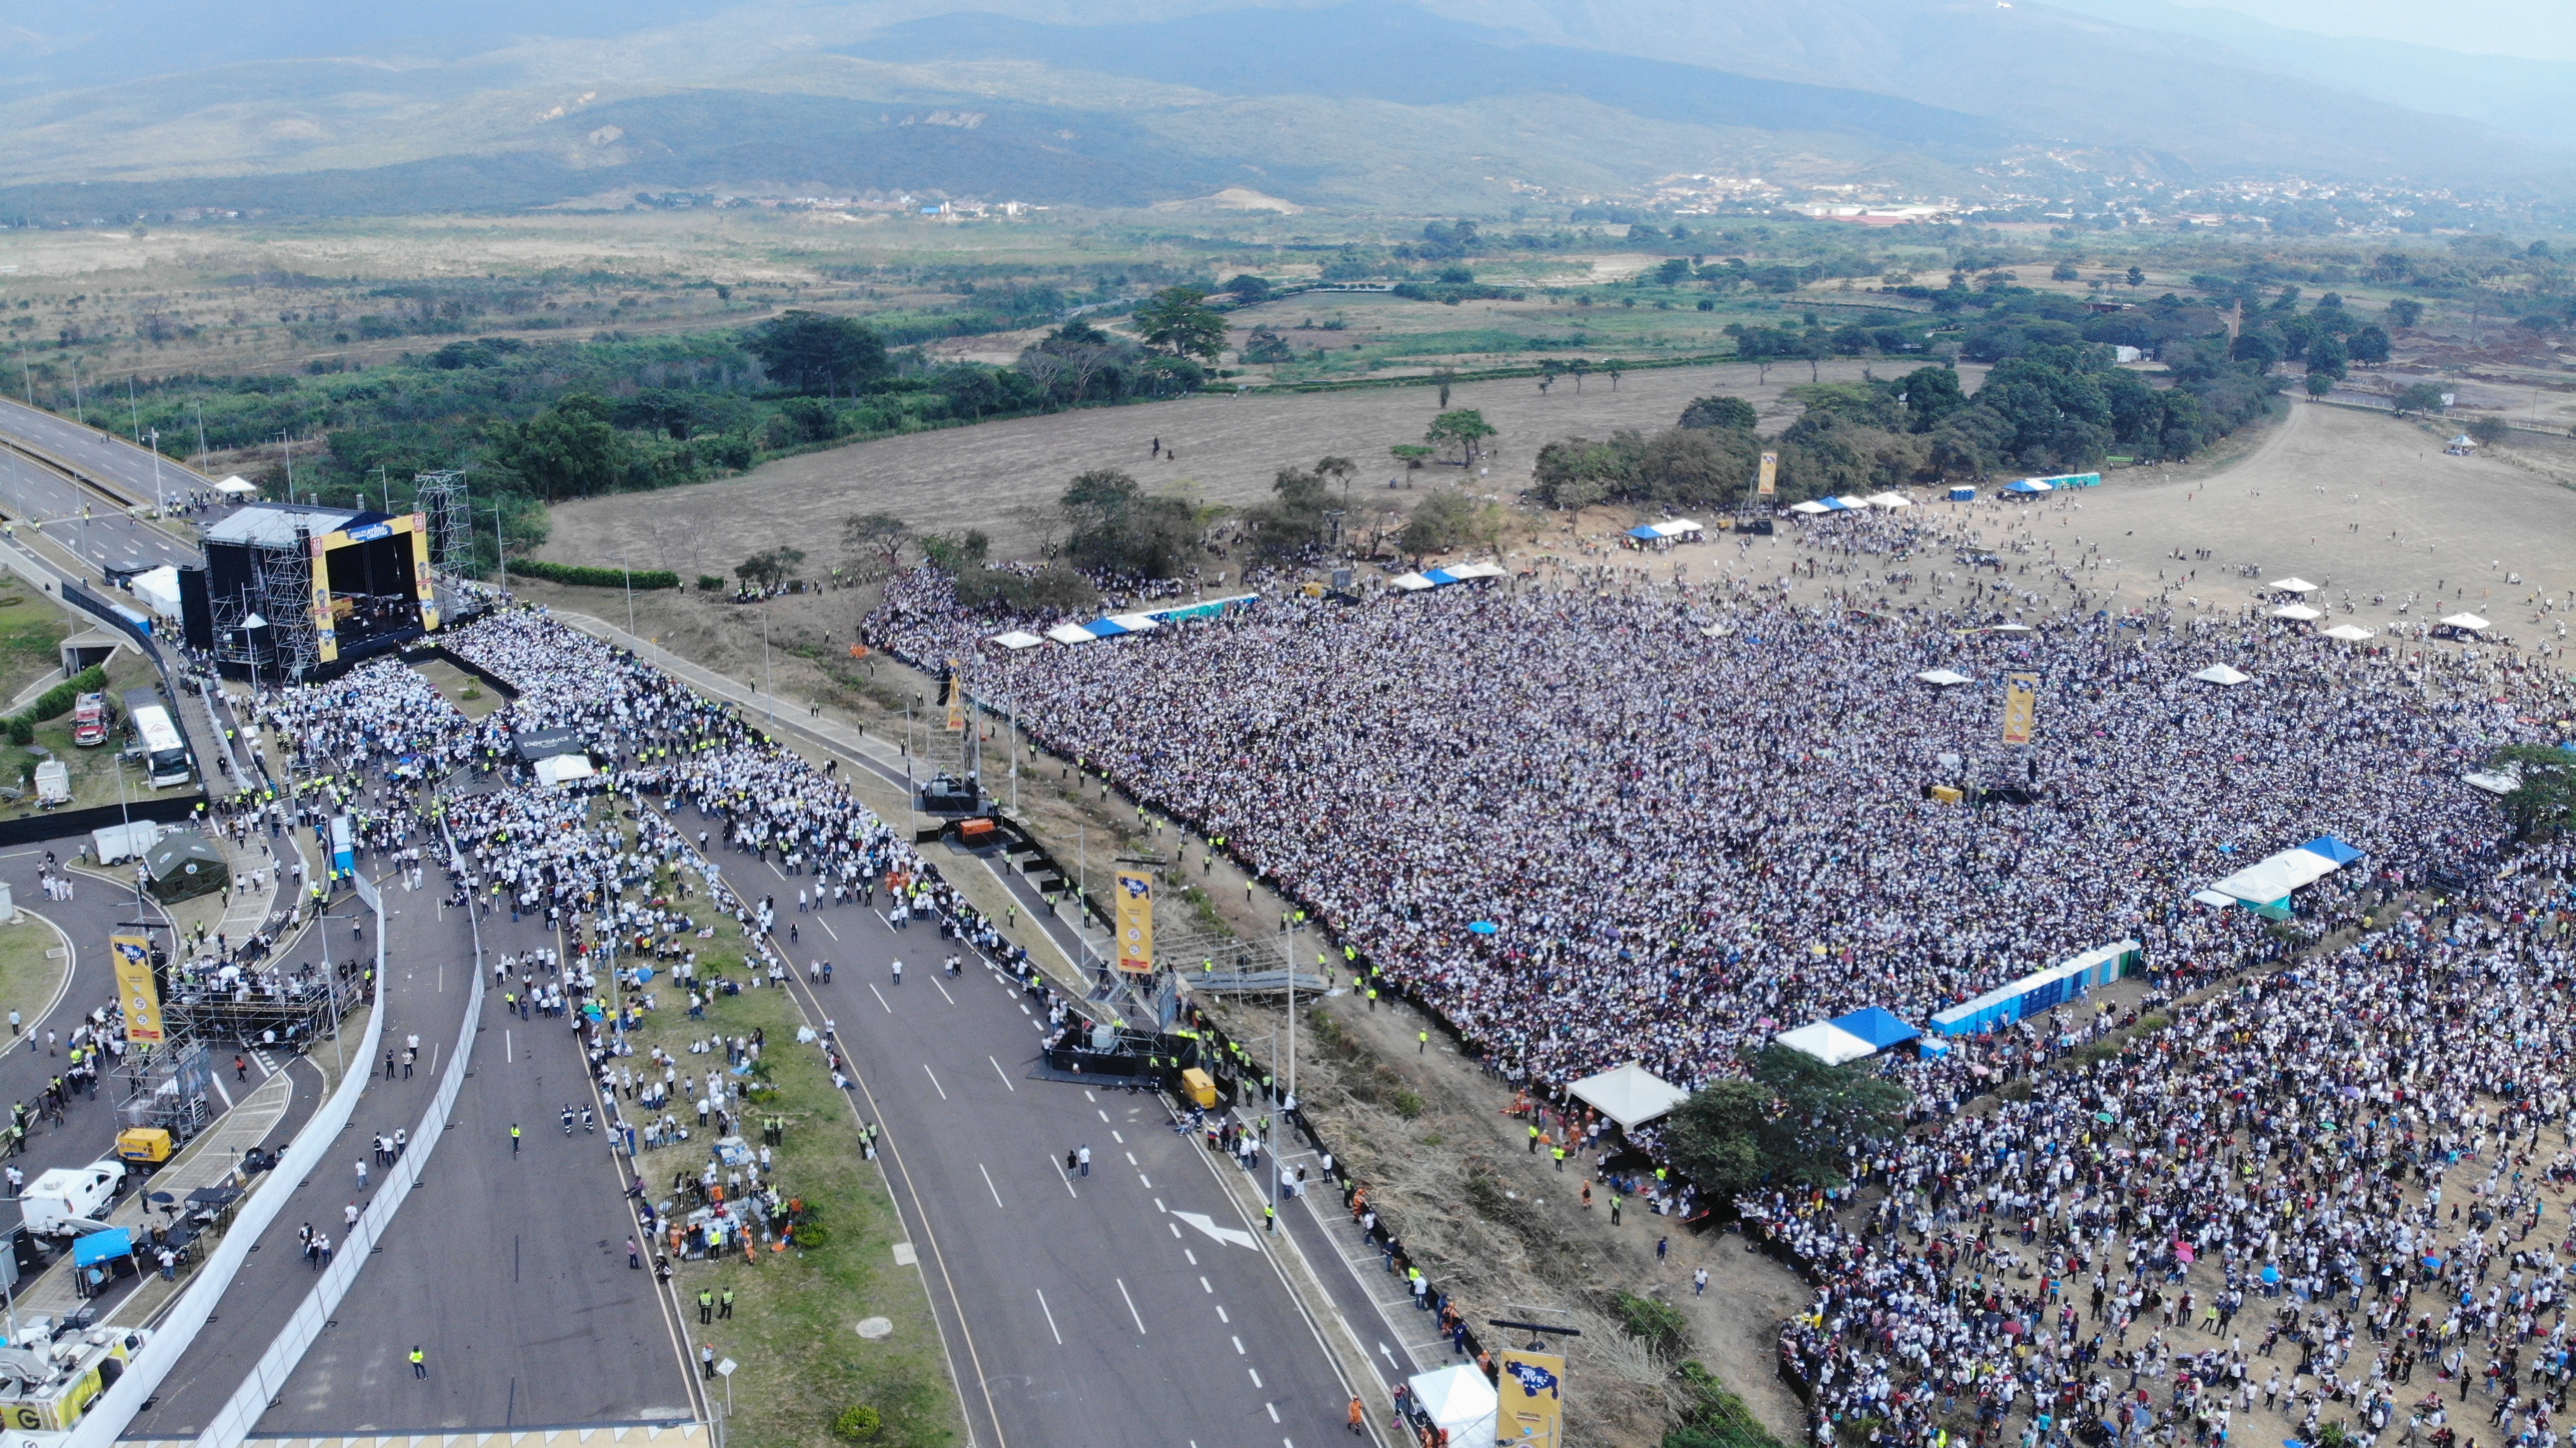 EN FOTOS: Vistas aéreas del concierto Venezuela Aid Live #22Feb